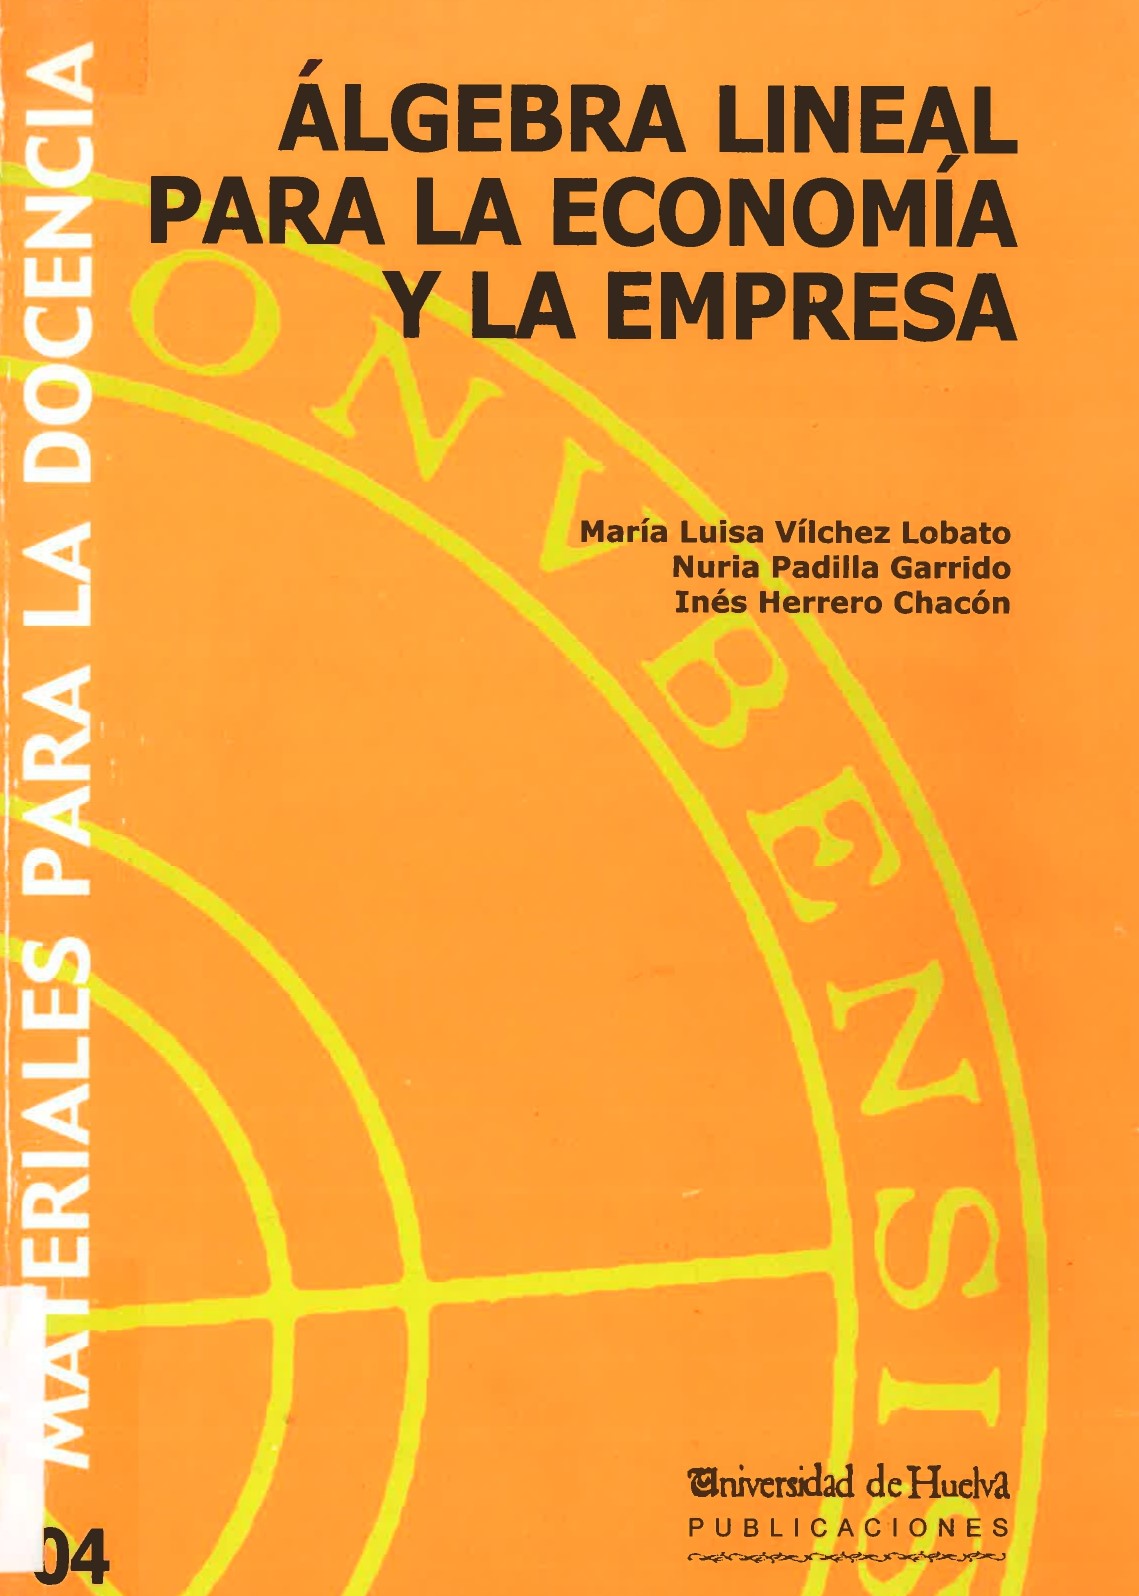 Imagen de portada del libro Álgebra lineal para la economía de la empresa